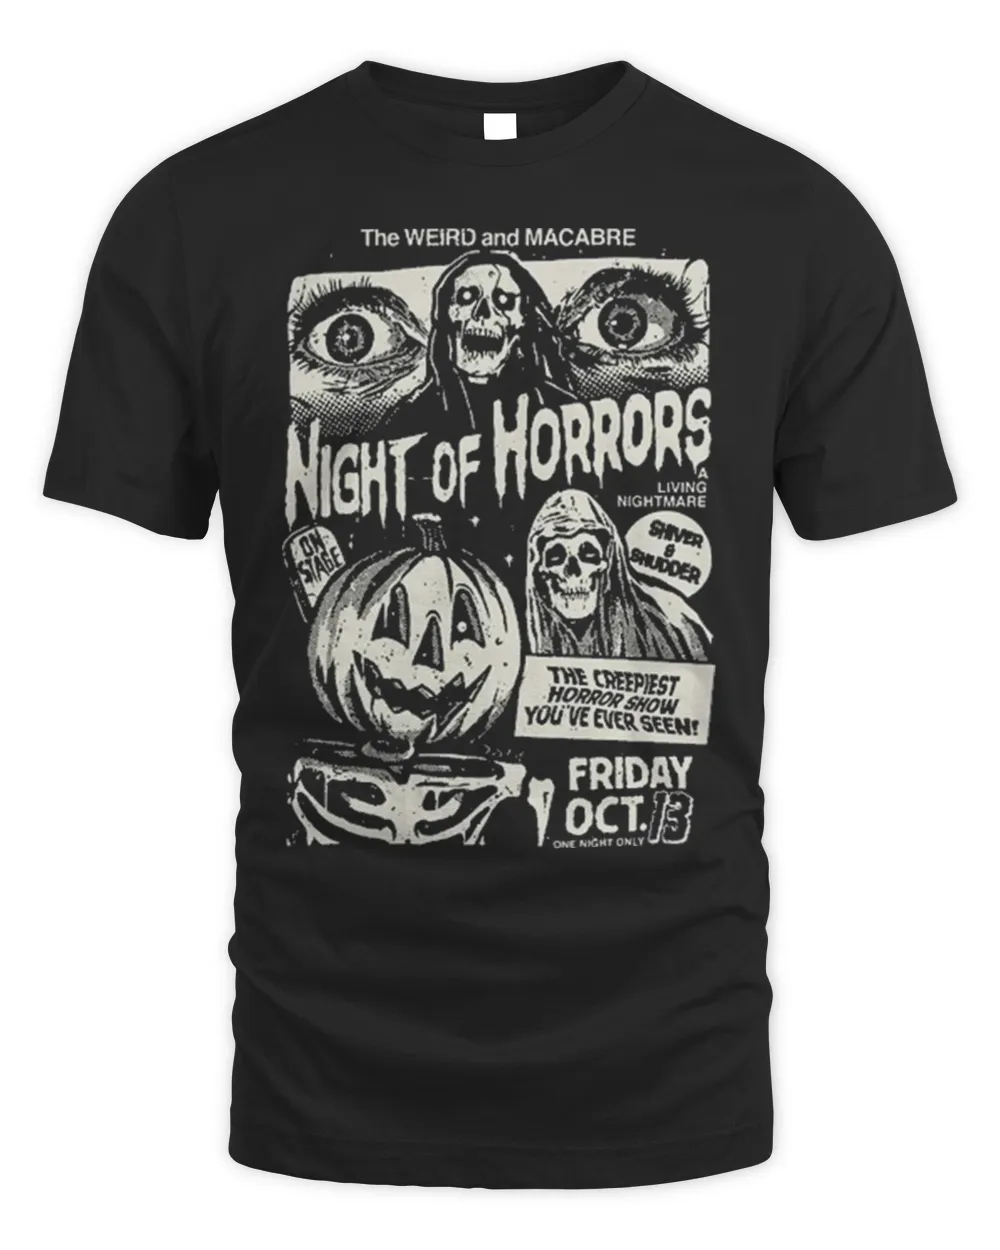 Night of Horrors Halloween Tee Shirt